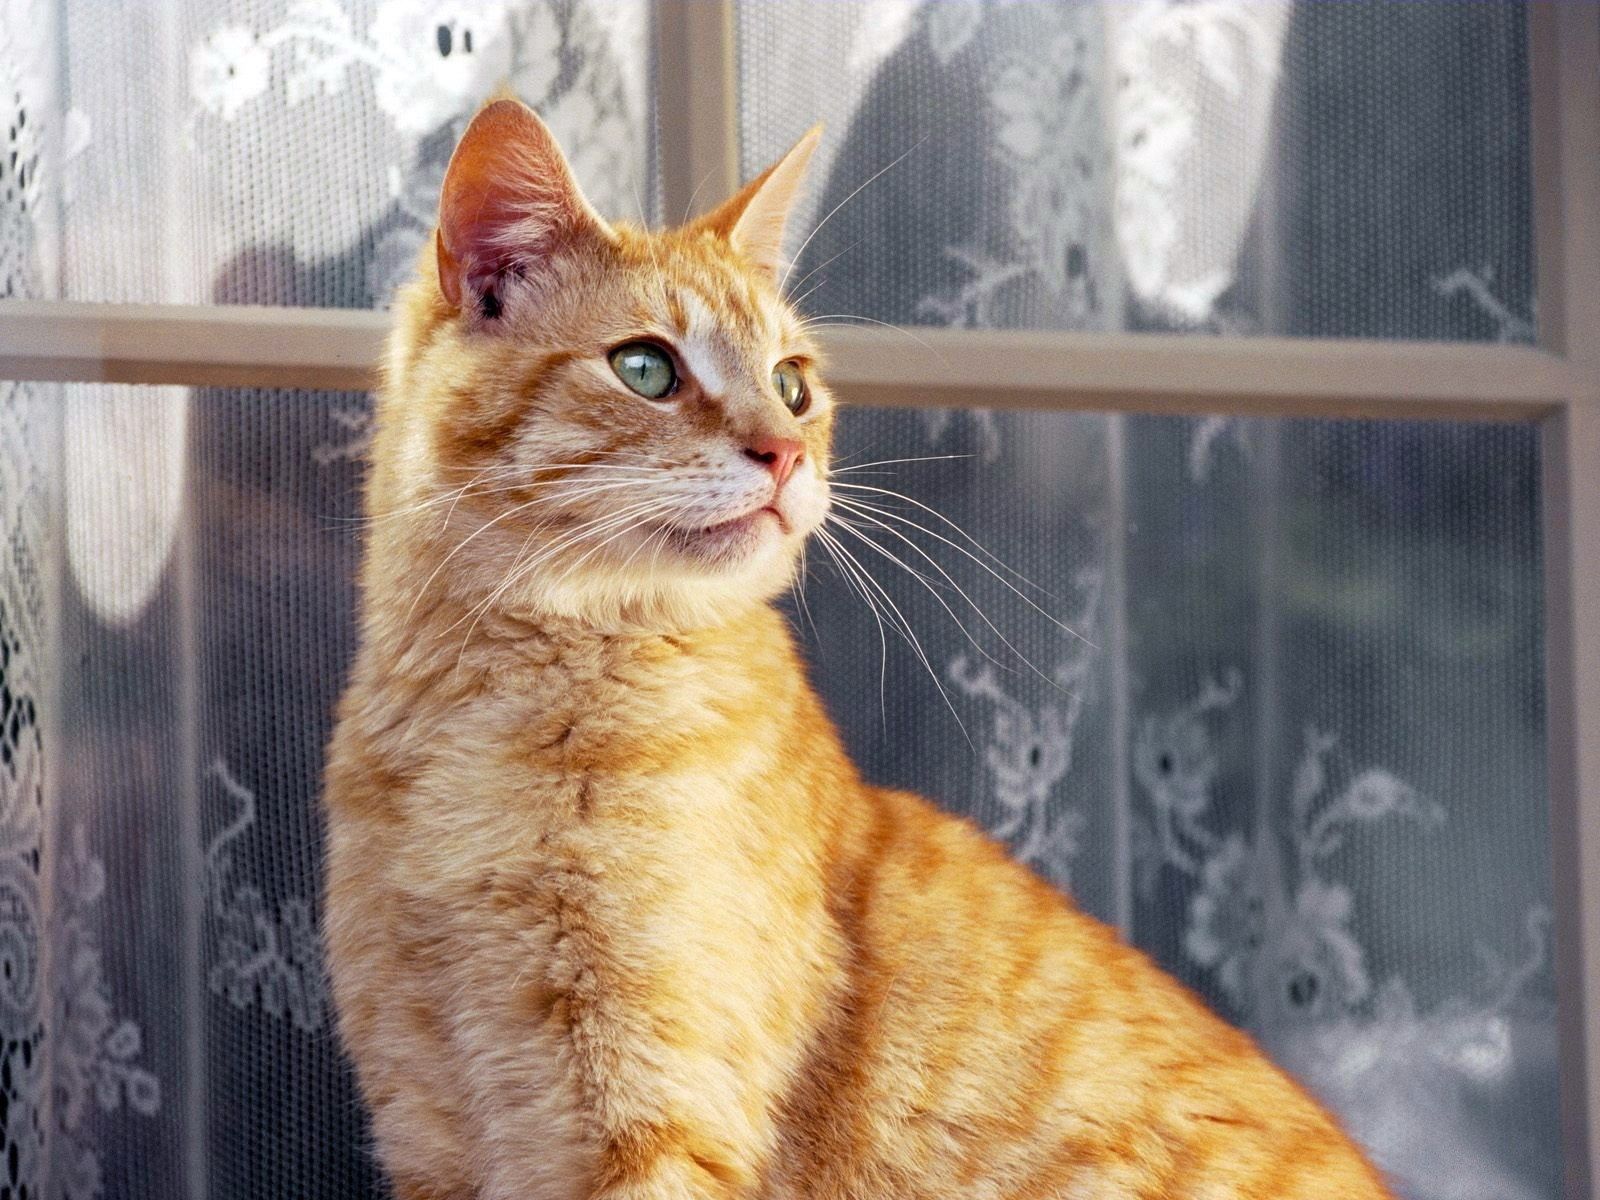 animals, cat, striped, window, window sill, windowsill, curtains